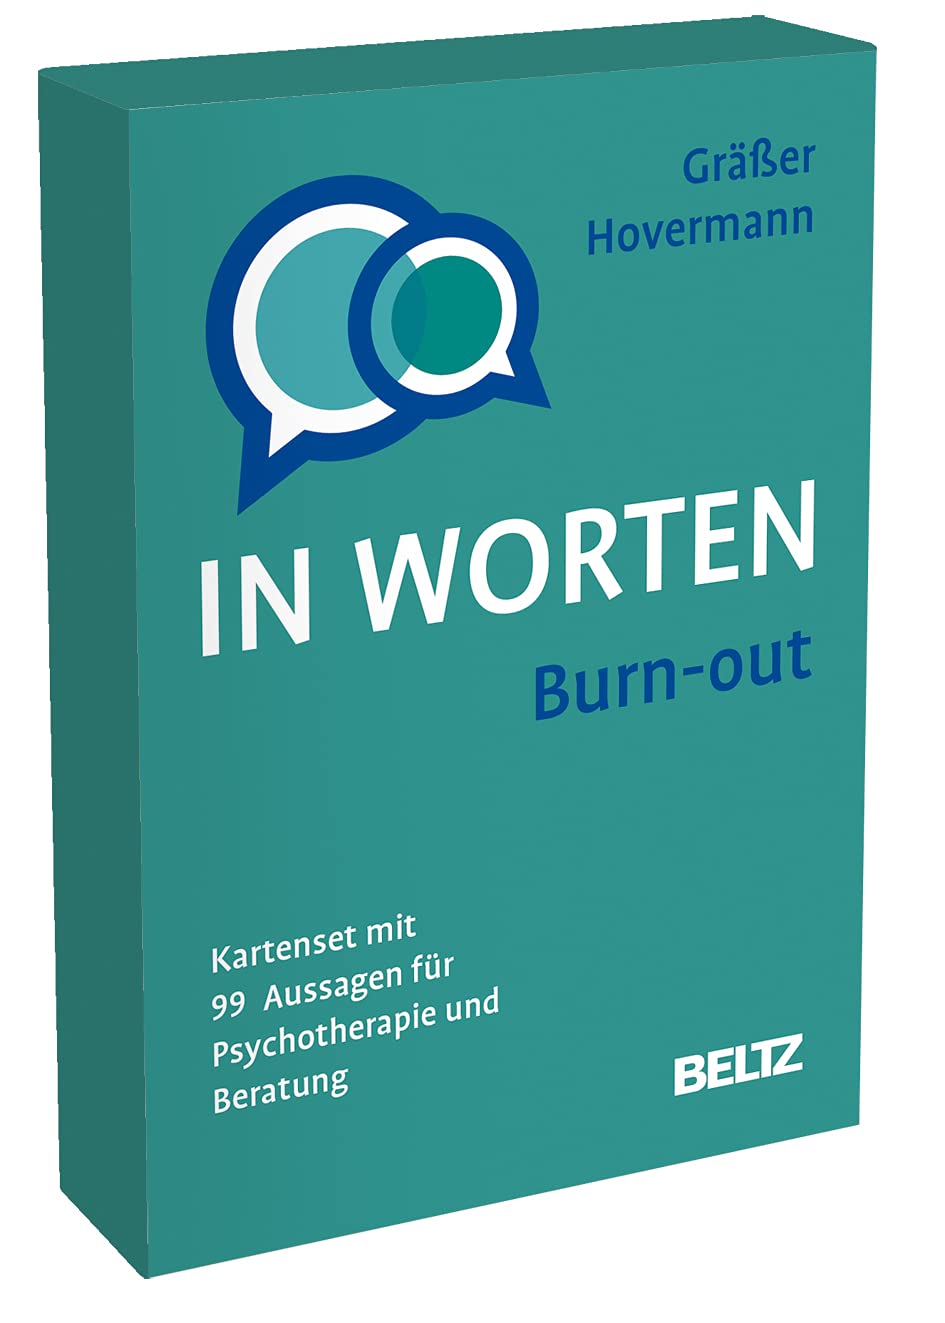 Burn-out in Worten: Kartenset mit 99 Aussagen für Psychotherapie und Beratung. Mit 8-seitigem Booklet im Stülpkarton, Kartenformat 5,9 x 9,2 cm. (Beltz Therapiekarten)